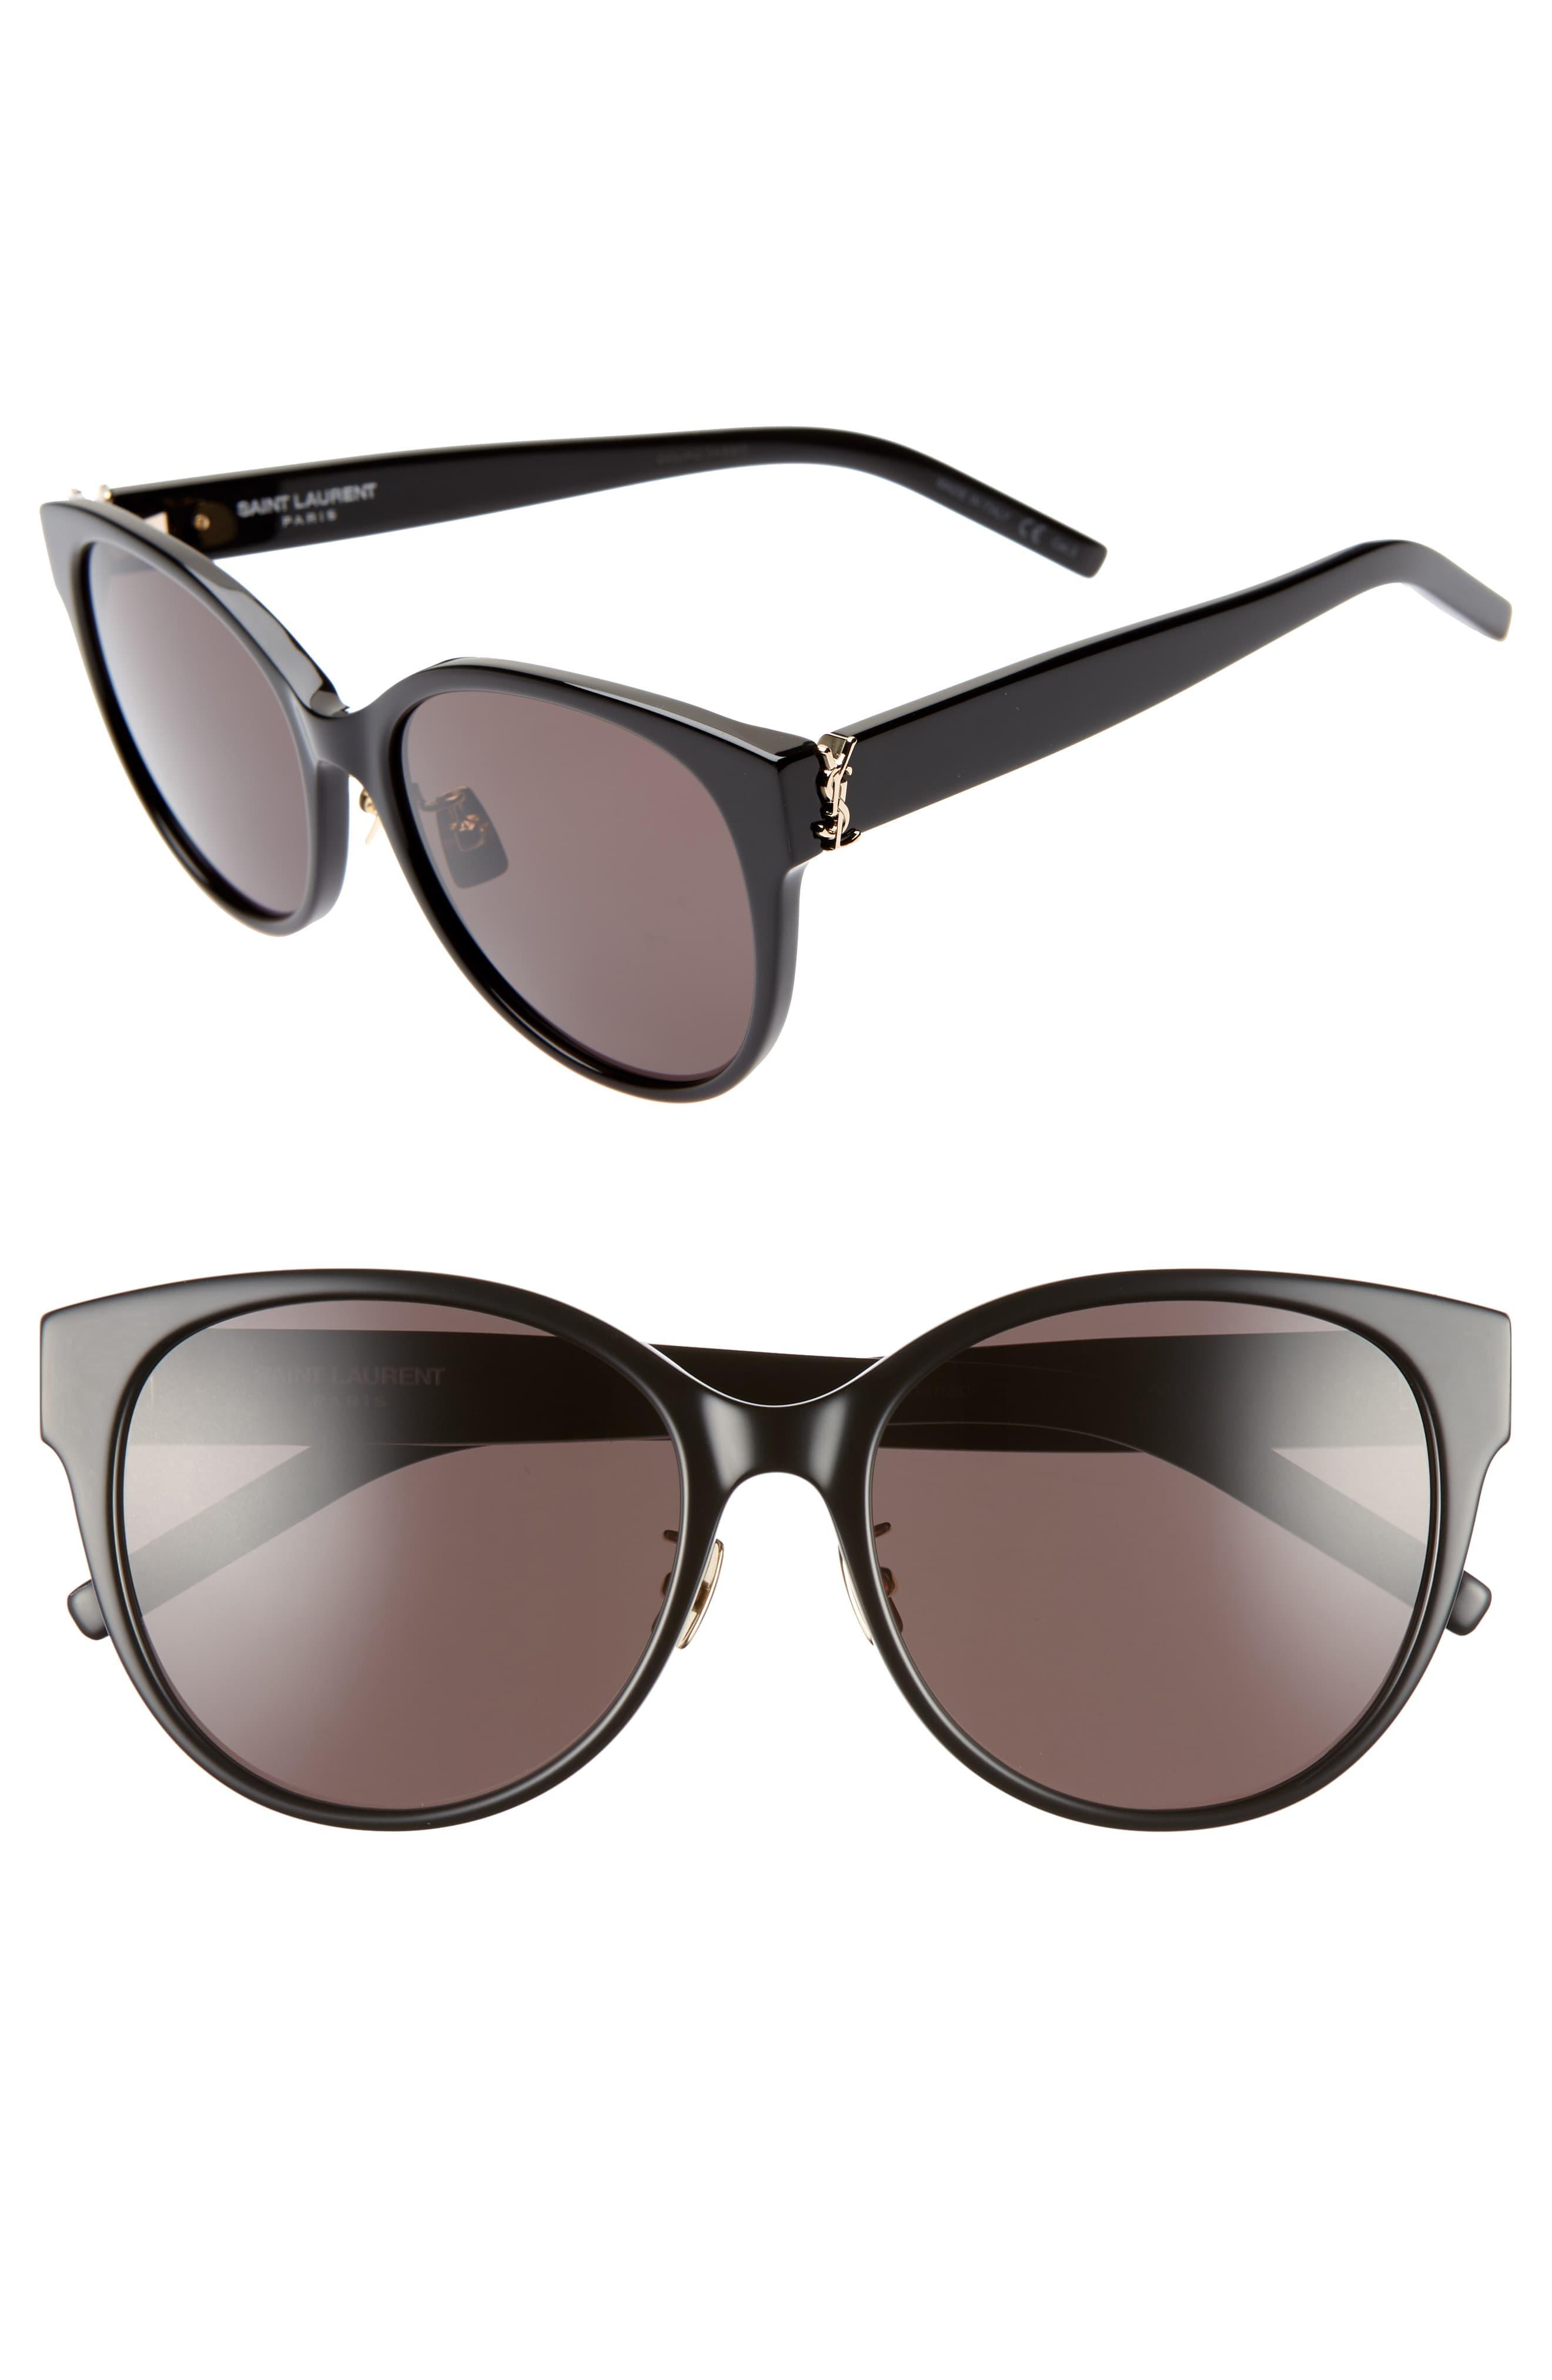 Saint Laurent 57mm Round Sunglasses in Black - Lyst